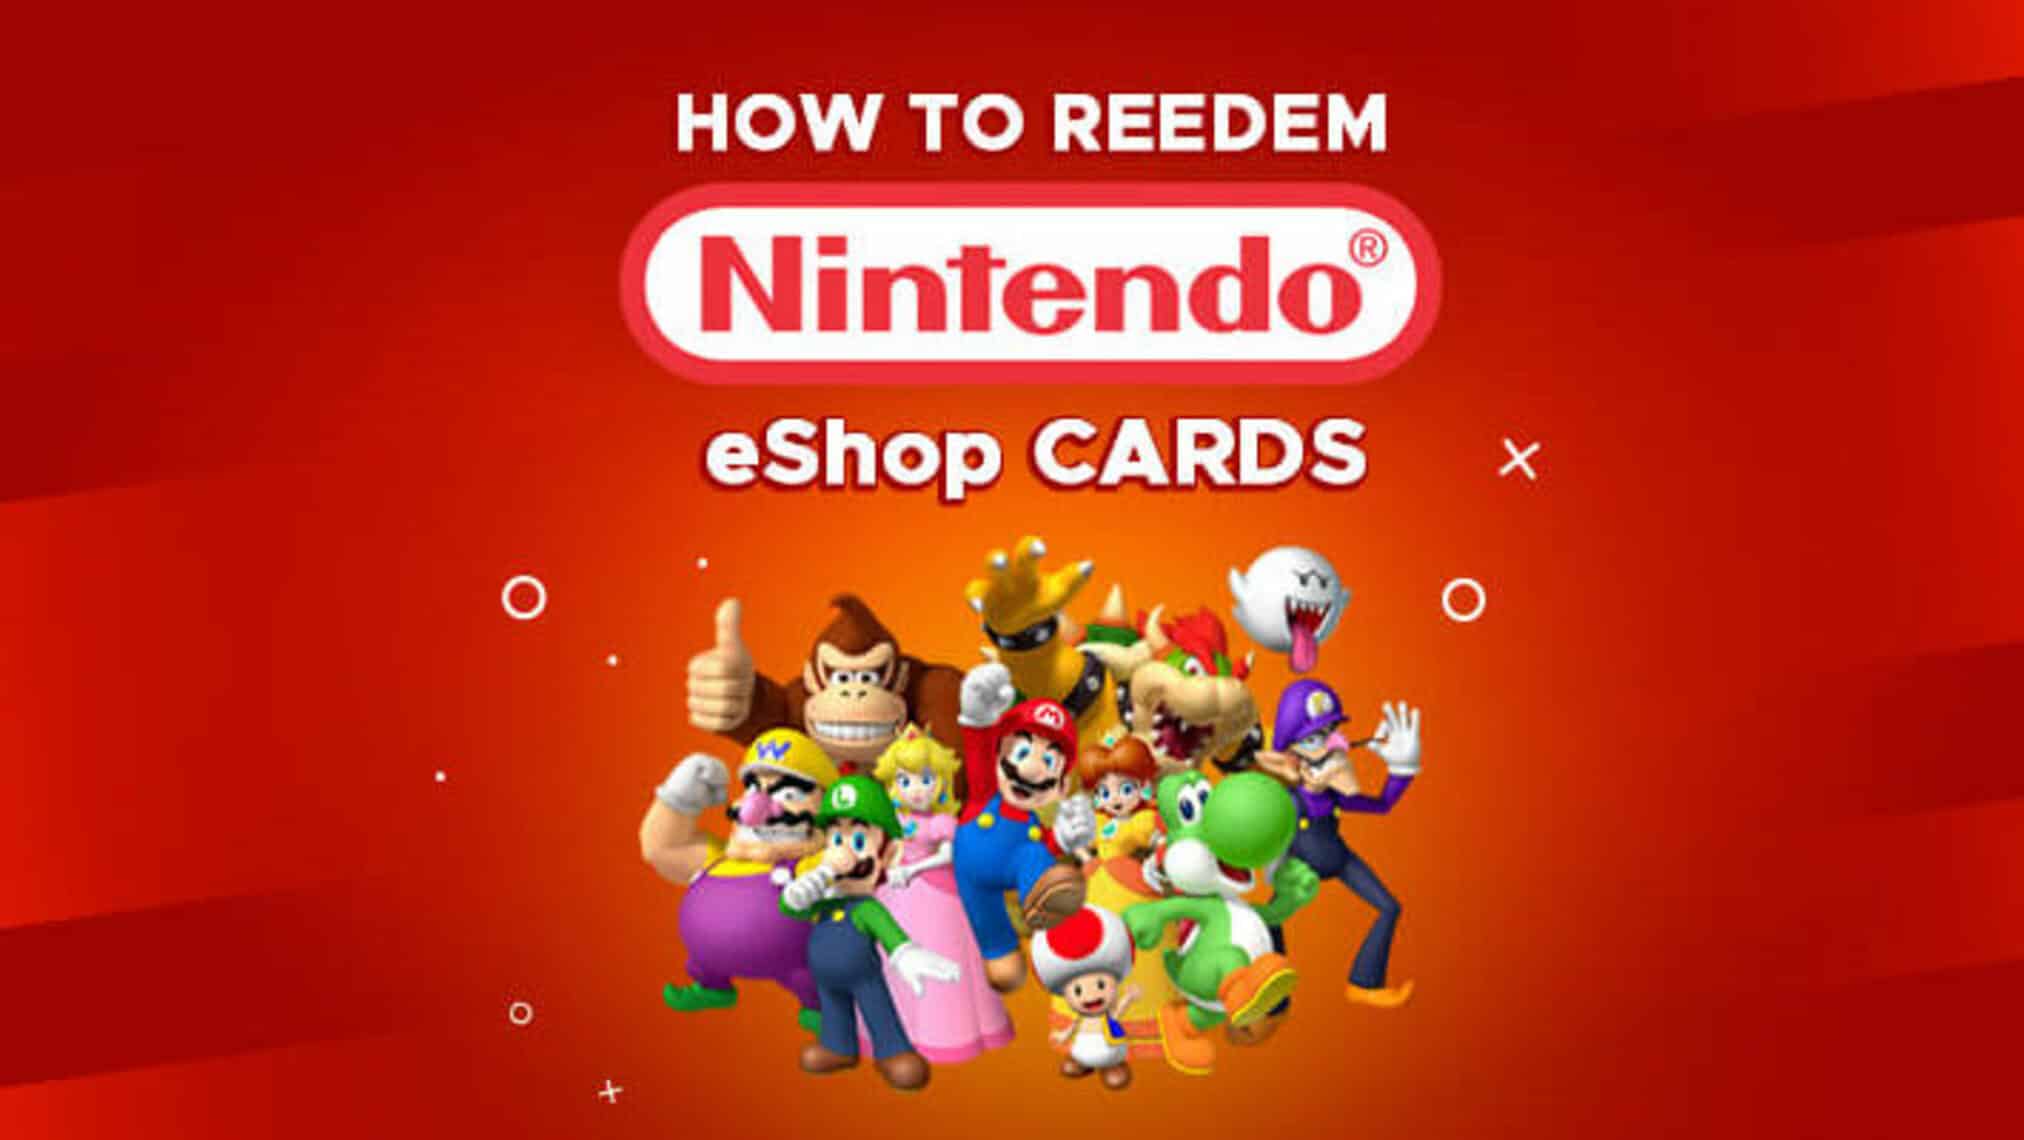 redeem a Nintendo eShop Card